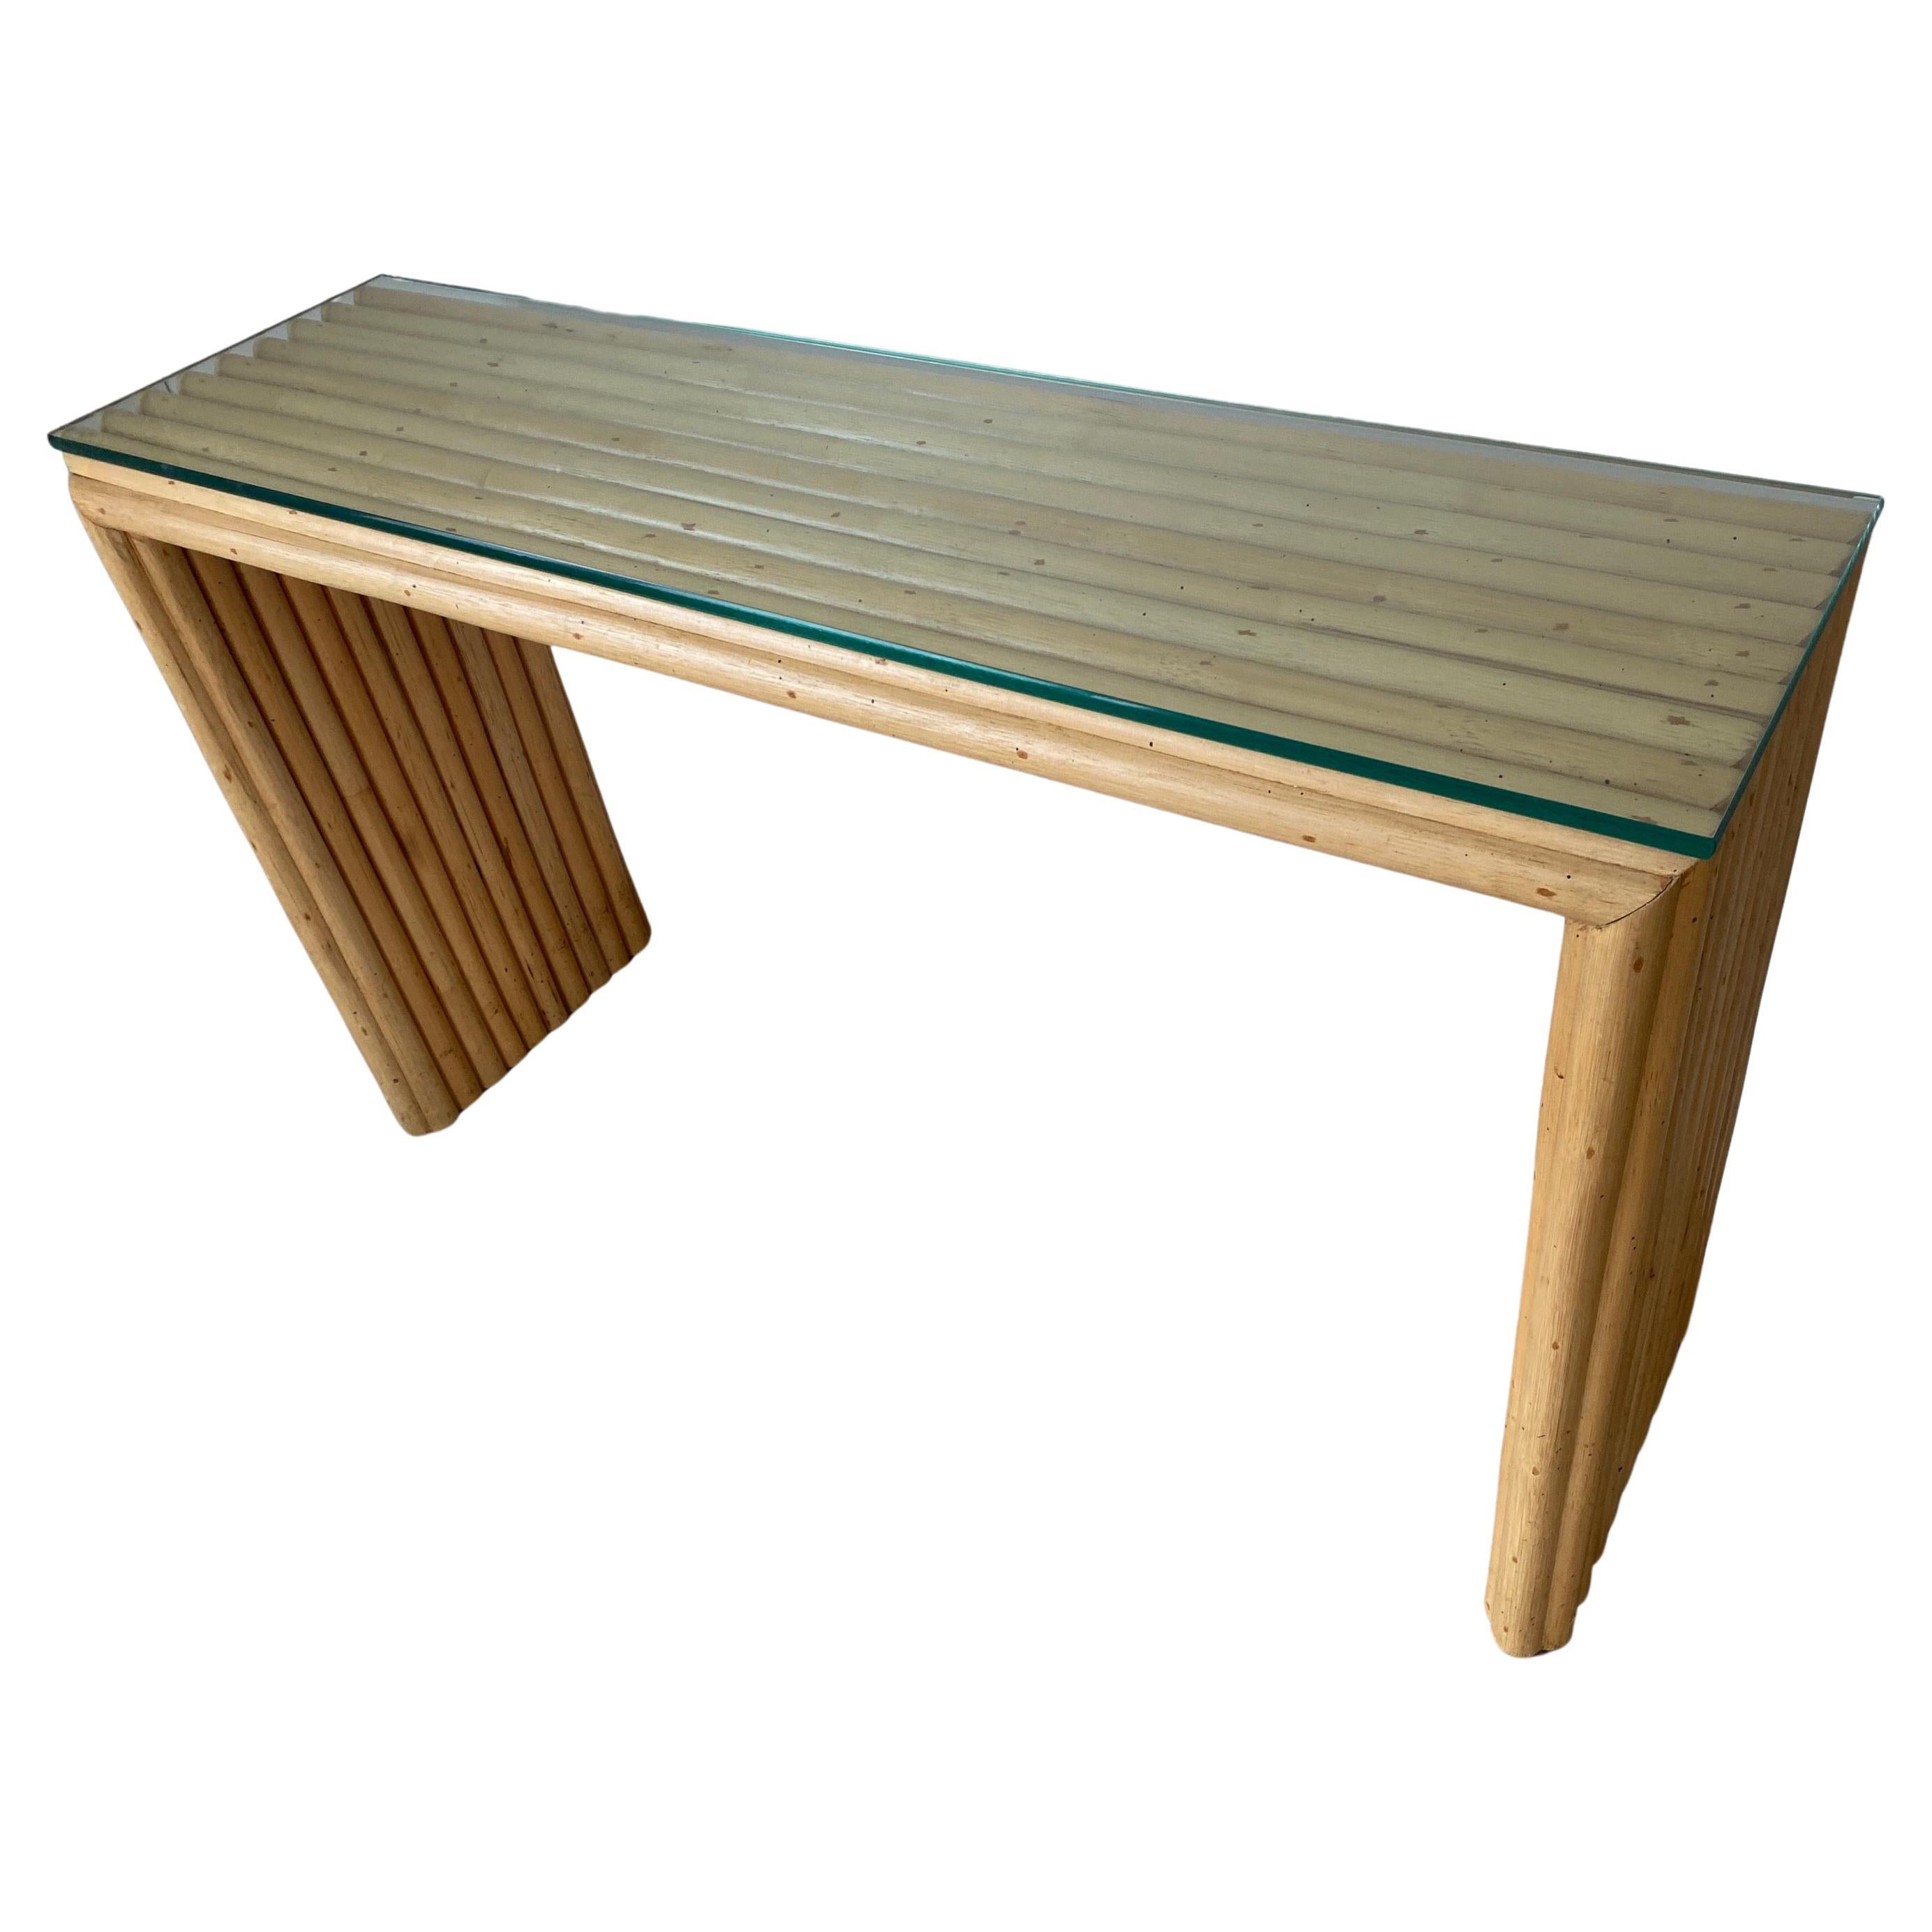 La table console de canapé en bambou avec plateau en verre, icône de la modernité du milieu du siècle, présente des lignes organiques simples et épurées. La table a un bord en forme de cascade.
Associez-le aux piédestaux demi-ronds en bambou ou à